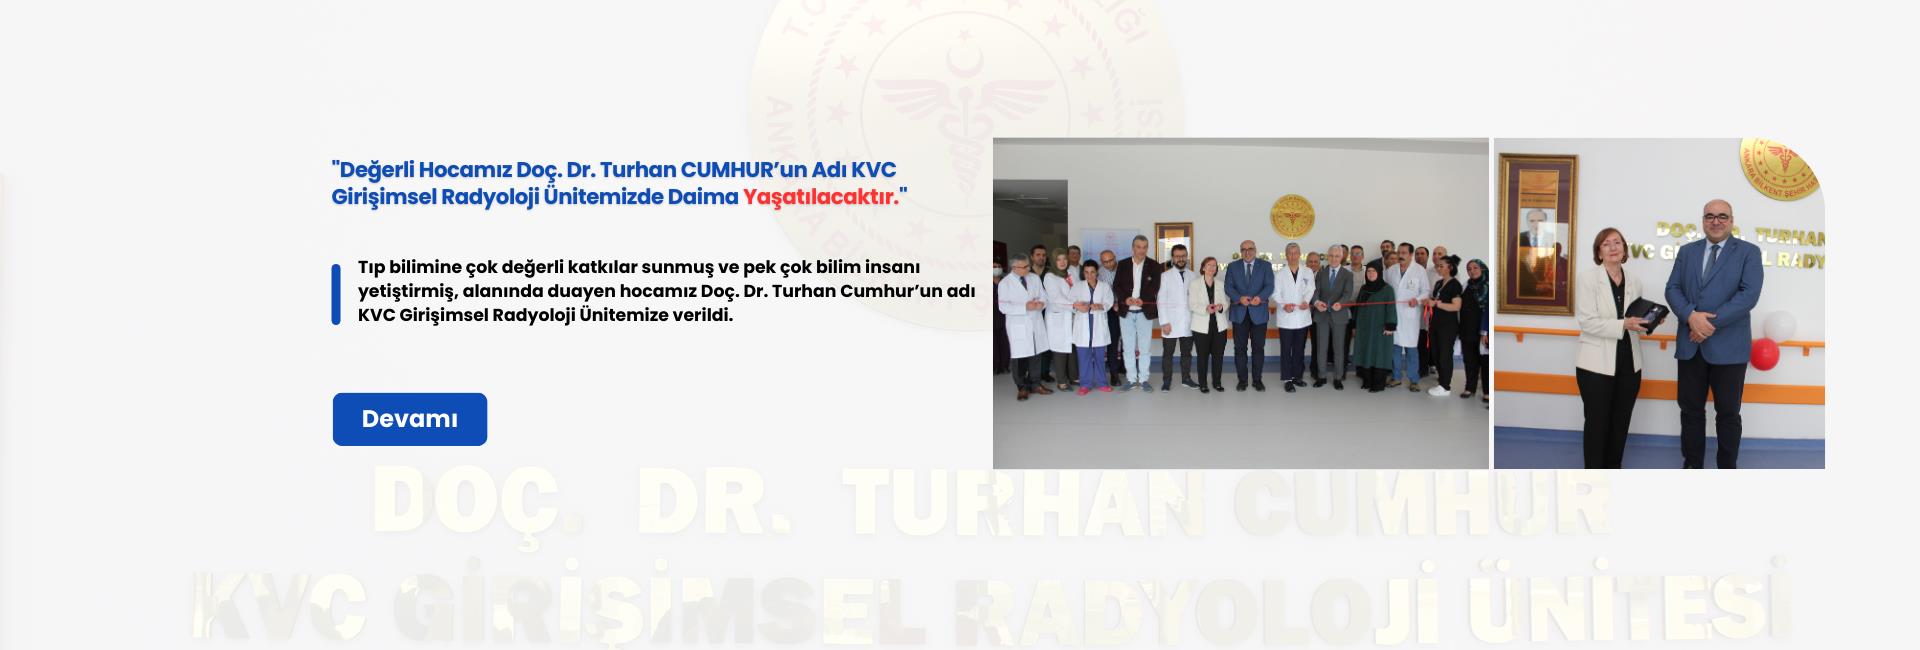 Doç. Dr. Turhan CUMHUR KVC Girişimsel Radyoloji Ünitemizde Daima Yaşatılacaktır.